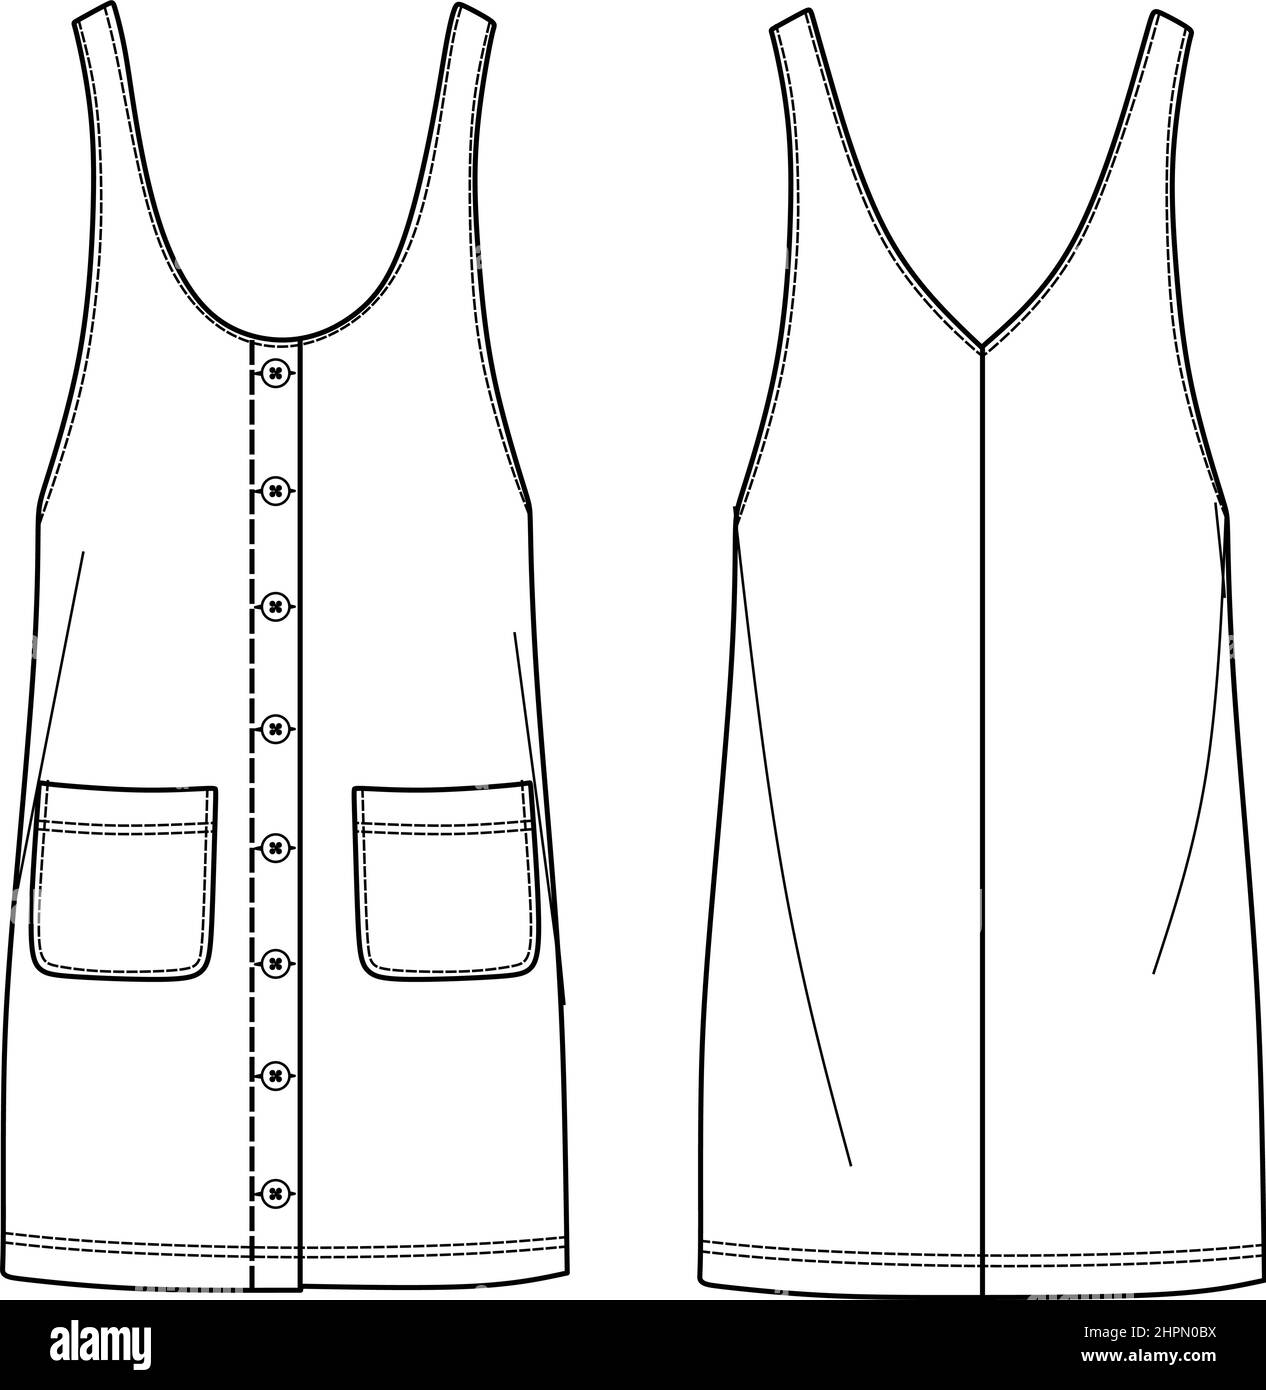 Dessin technique de robe globale vectorielle, CAO de mode générale femme, modèle de robe avec poches et boutons Illustration de Vecteur